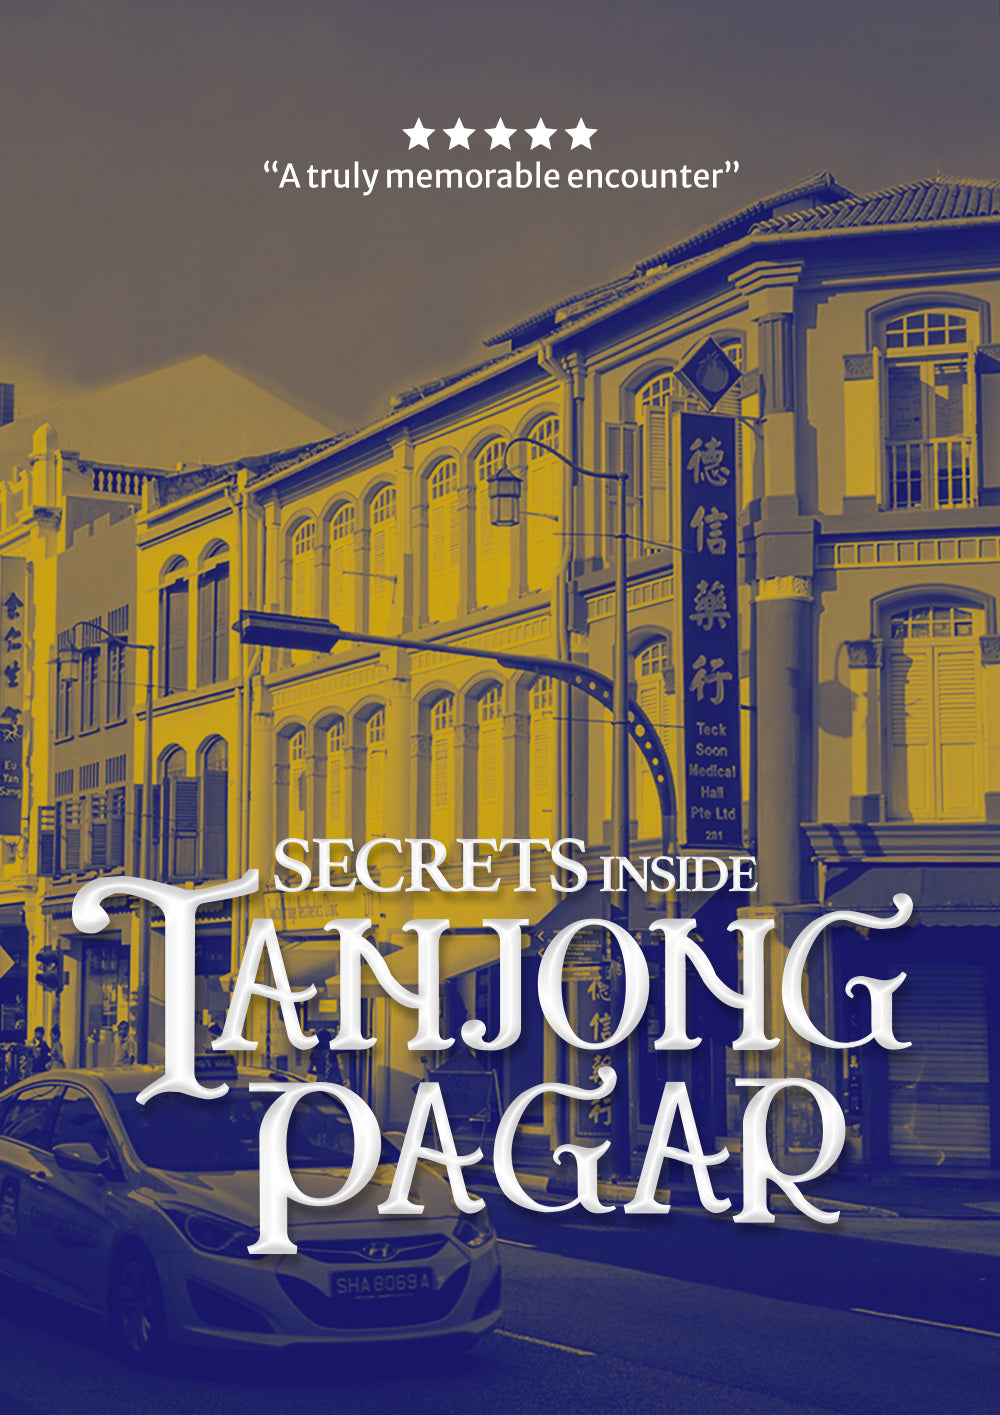 Tanjong Pagar